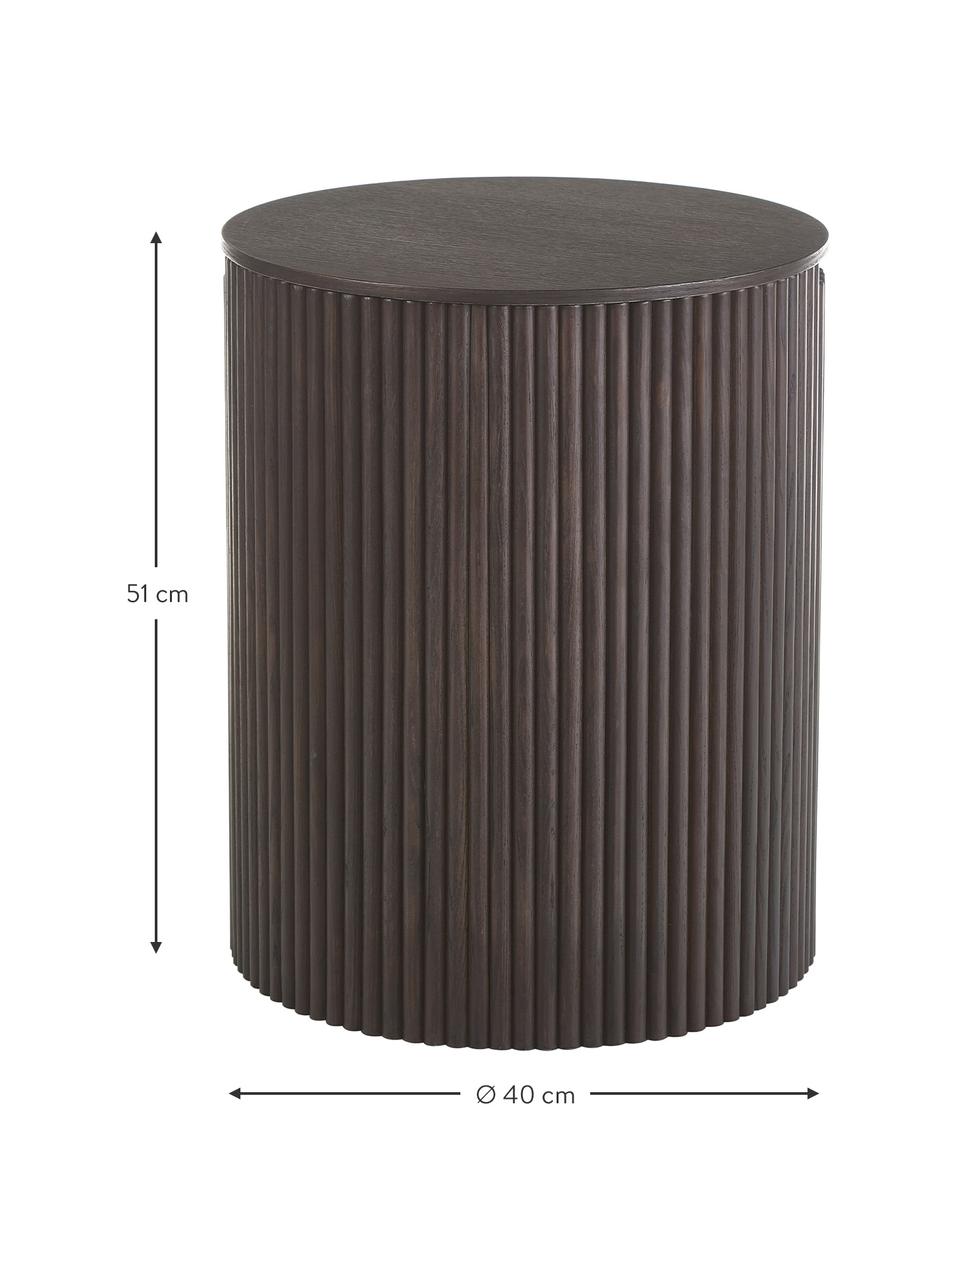 Table d'appoint avec rangement Nele, MDF (panneau en fibres de bois à densité moyenne) avec placage en frêne, Brun foncé, Ø 40 x haut. 51 cm